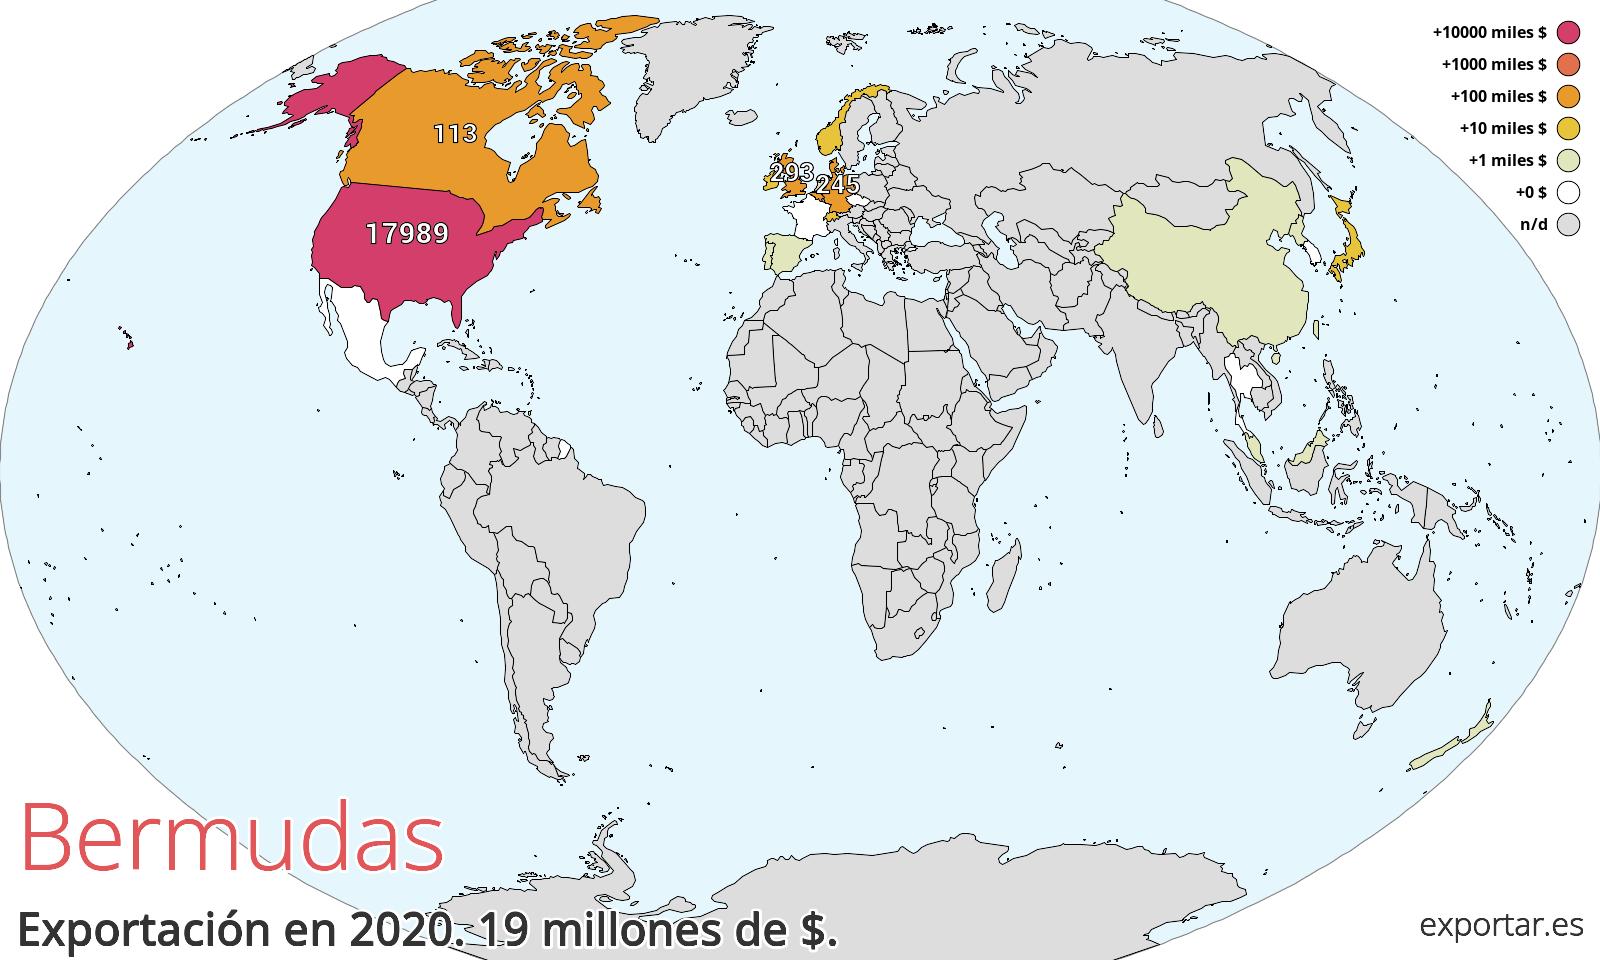 Mapa de exportación de Bermudas en 2020.